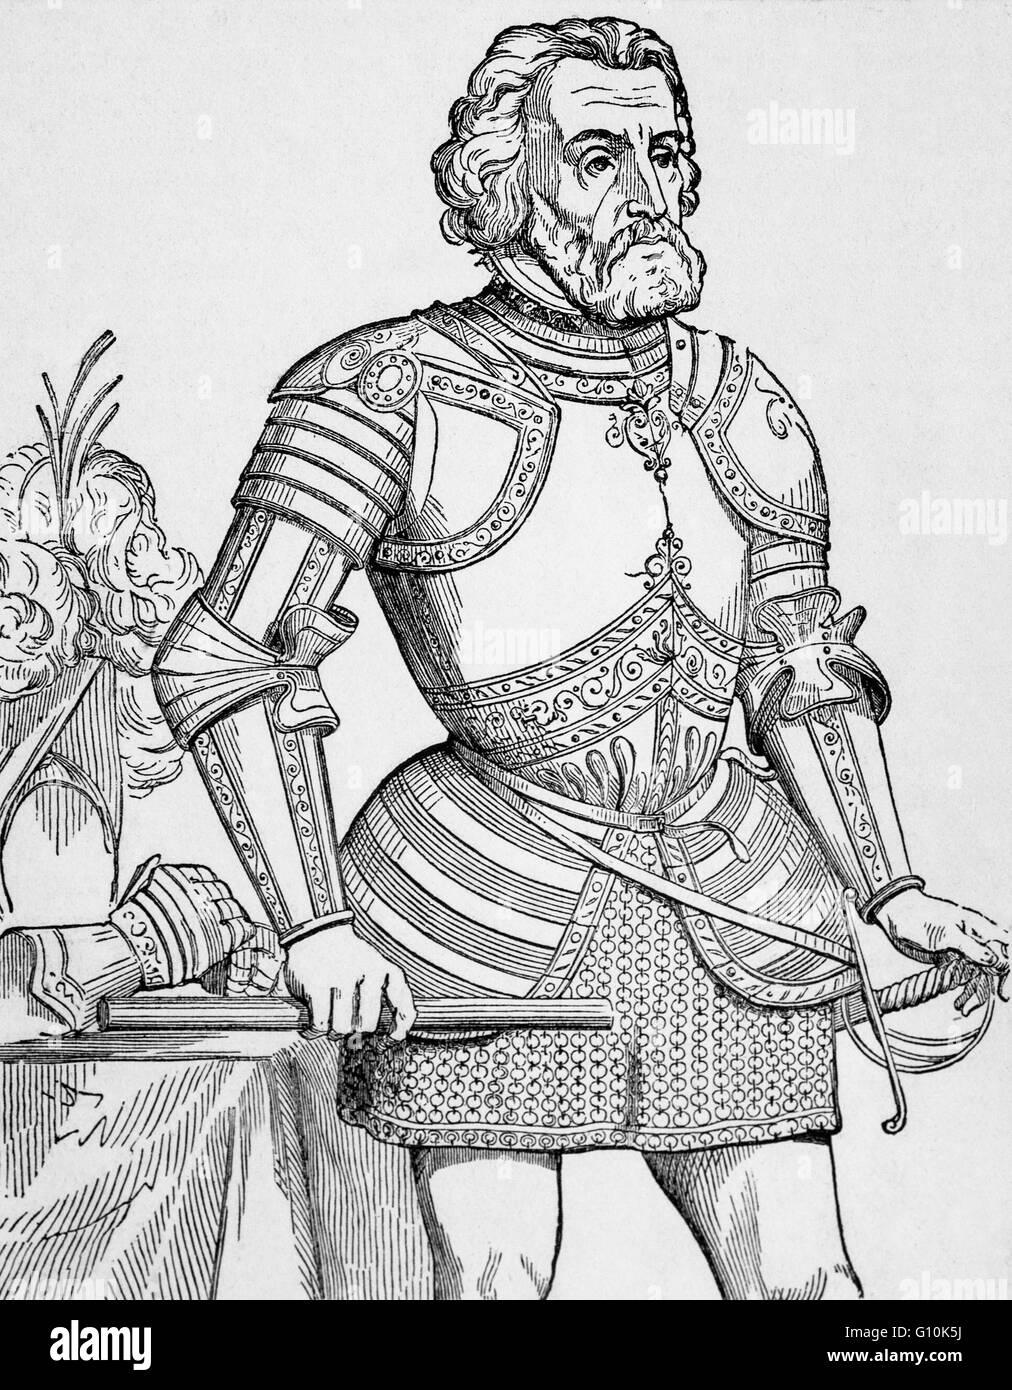 Ferdinand Cortez, conquistador espagnol qui a mené une expédition qui a causé la chute de l'Empire Aztèque. Il a également porté une grande partie de la partie continentale du Mexique en vertu de la règle du Roi de Castille au début du 16ème siècle. Banque D'Images